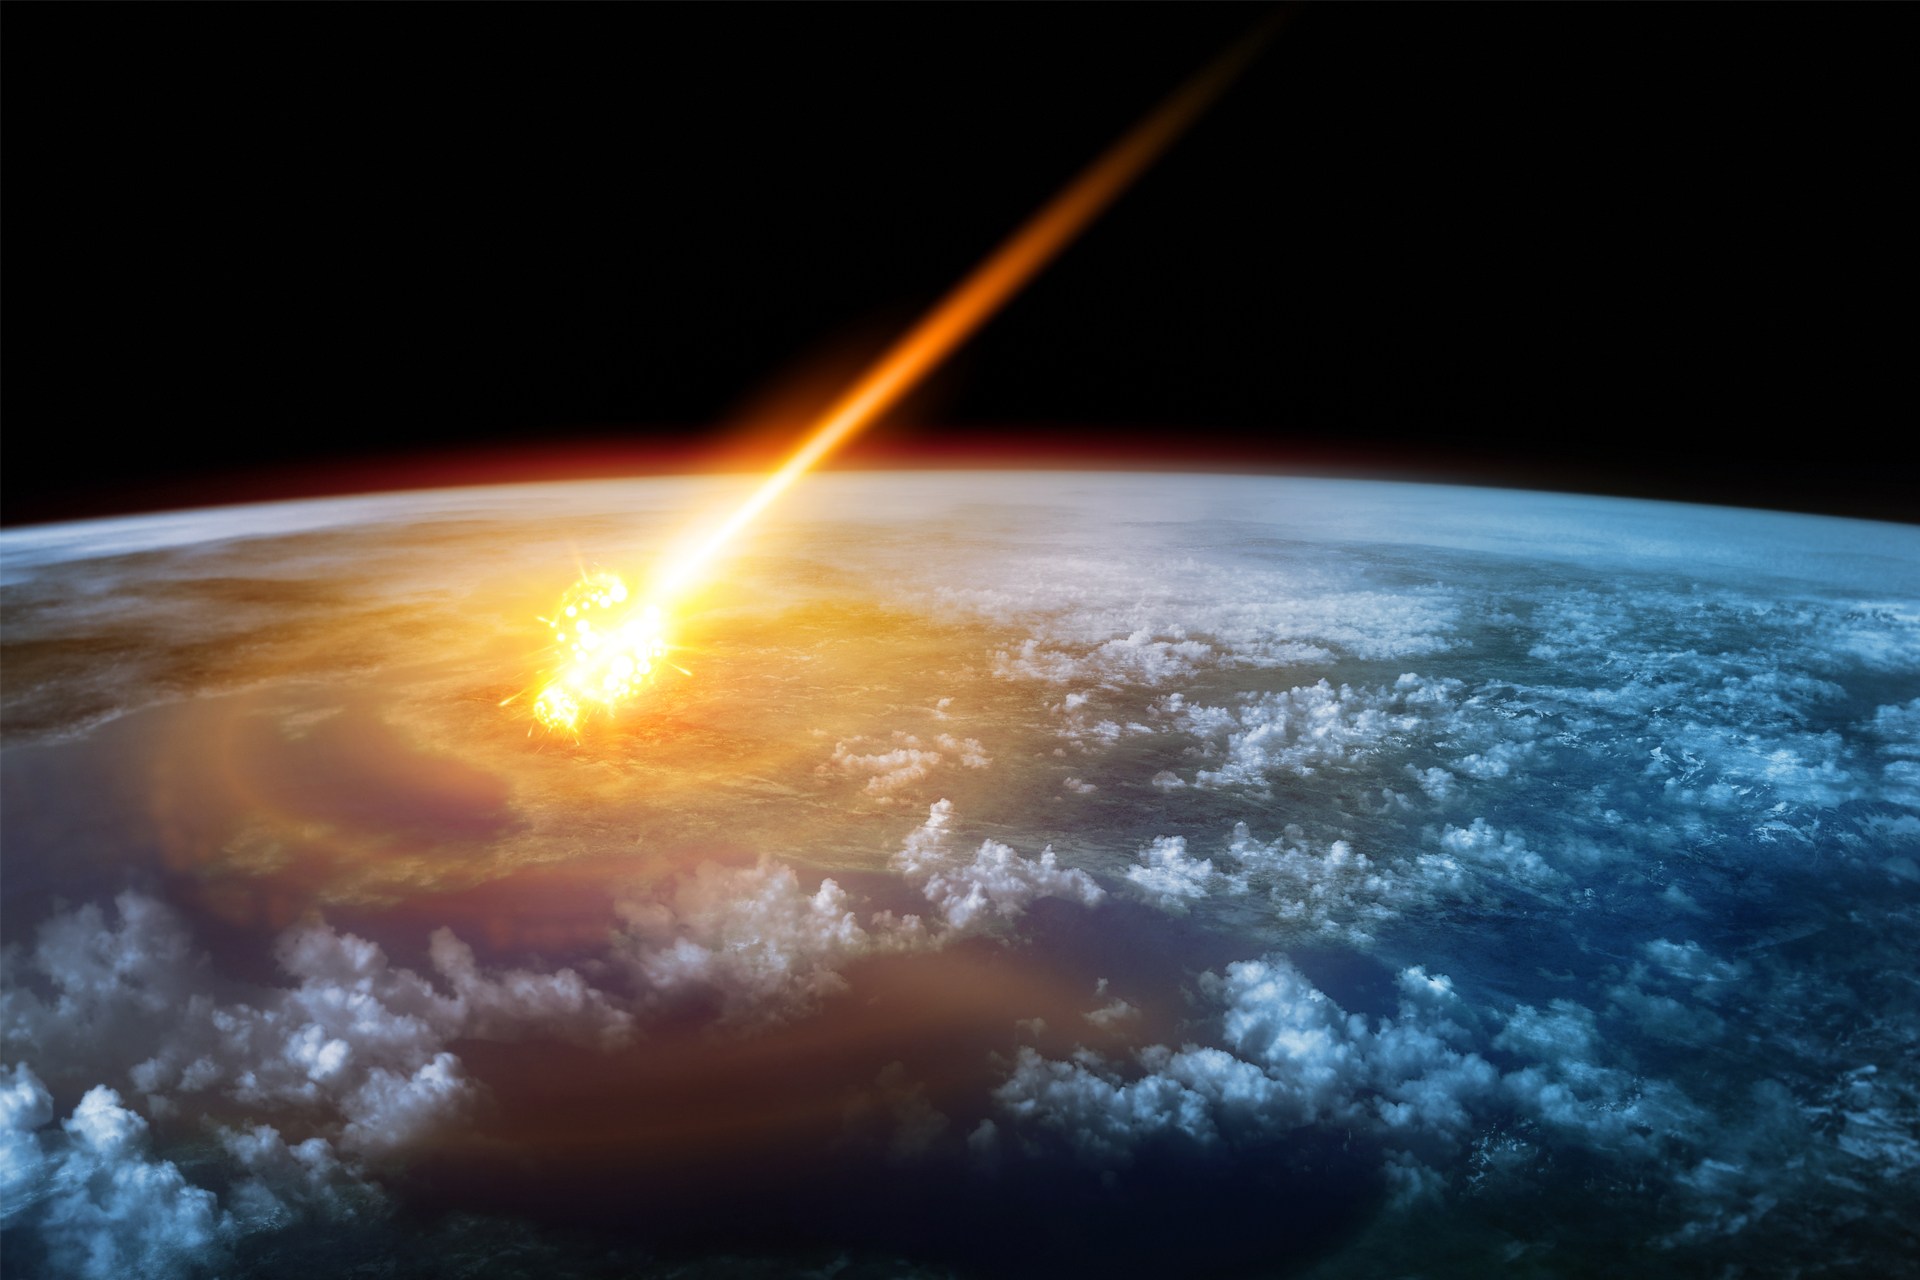 Νέα στοιχεία για πτώση αστεροειδή στη Γη πριν 800.000 χρόνια